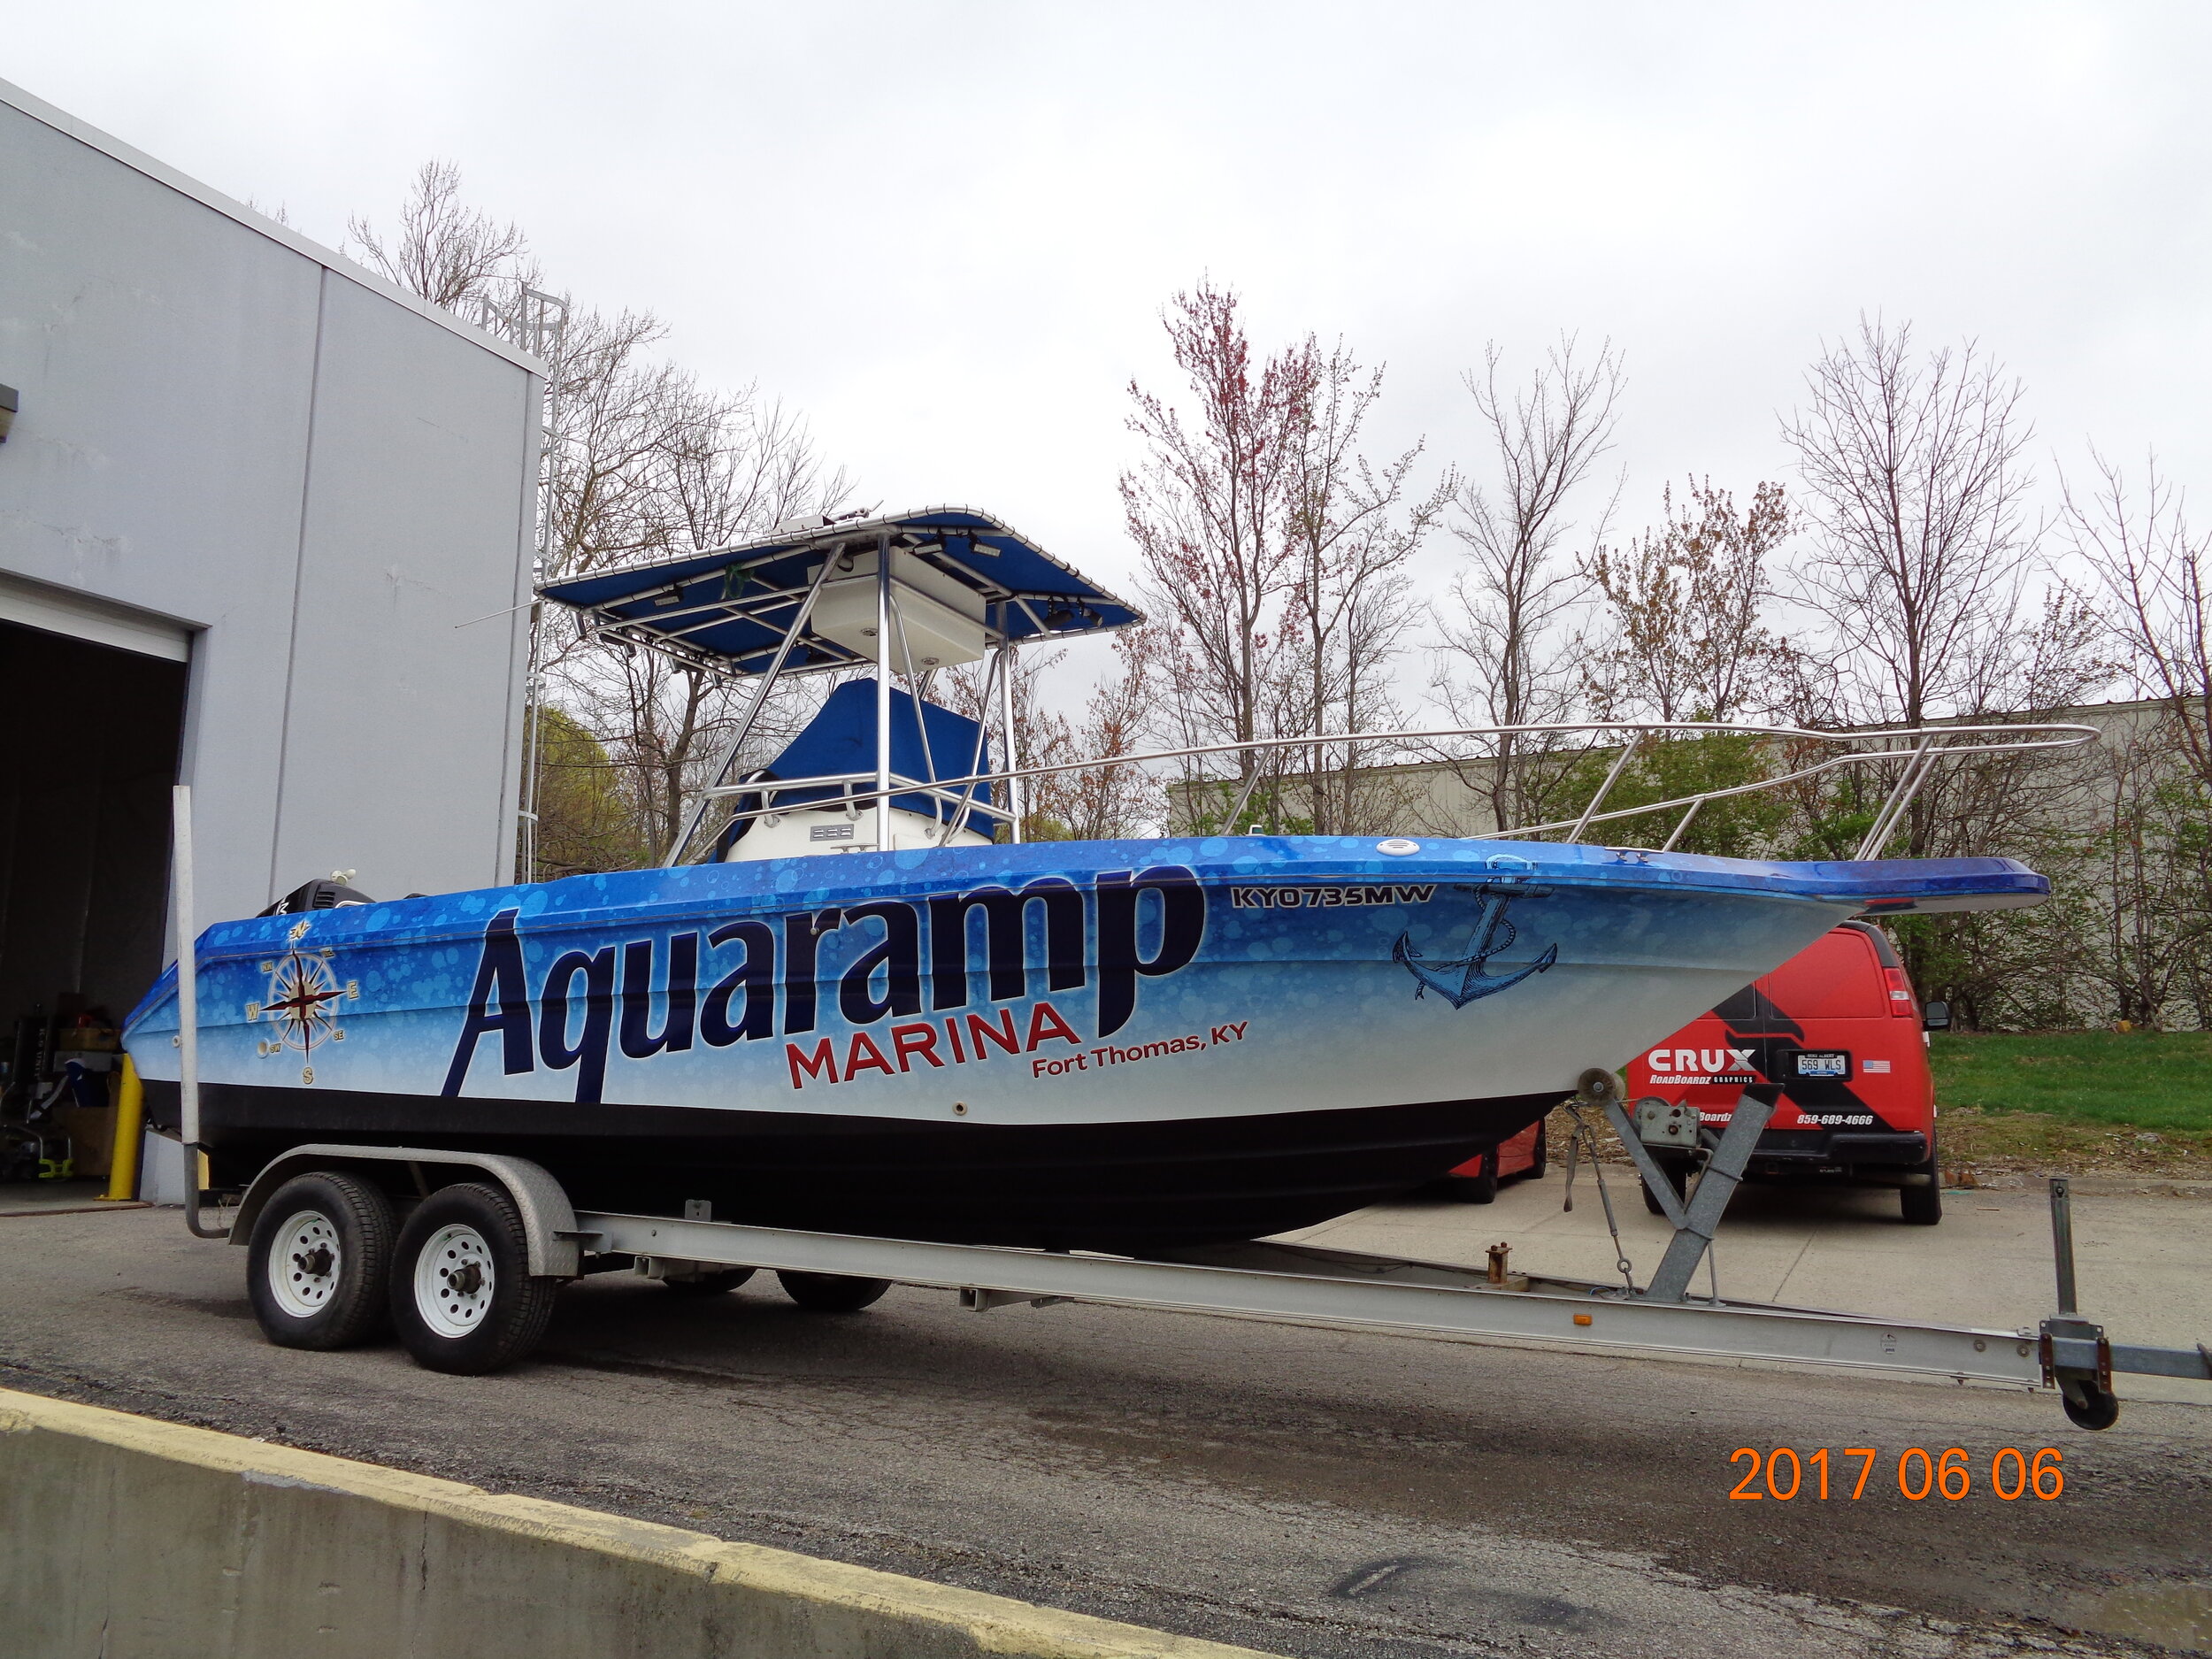 1900420 Aquaramp Marina - Boat Wrap (1).JPG